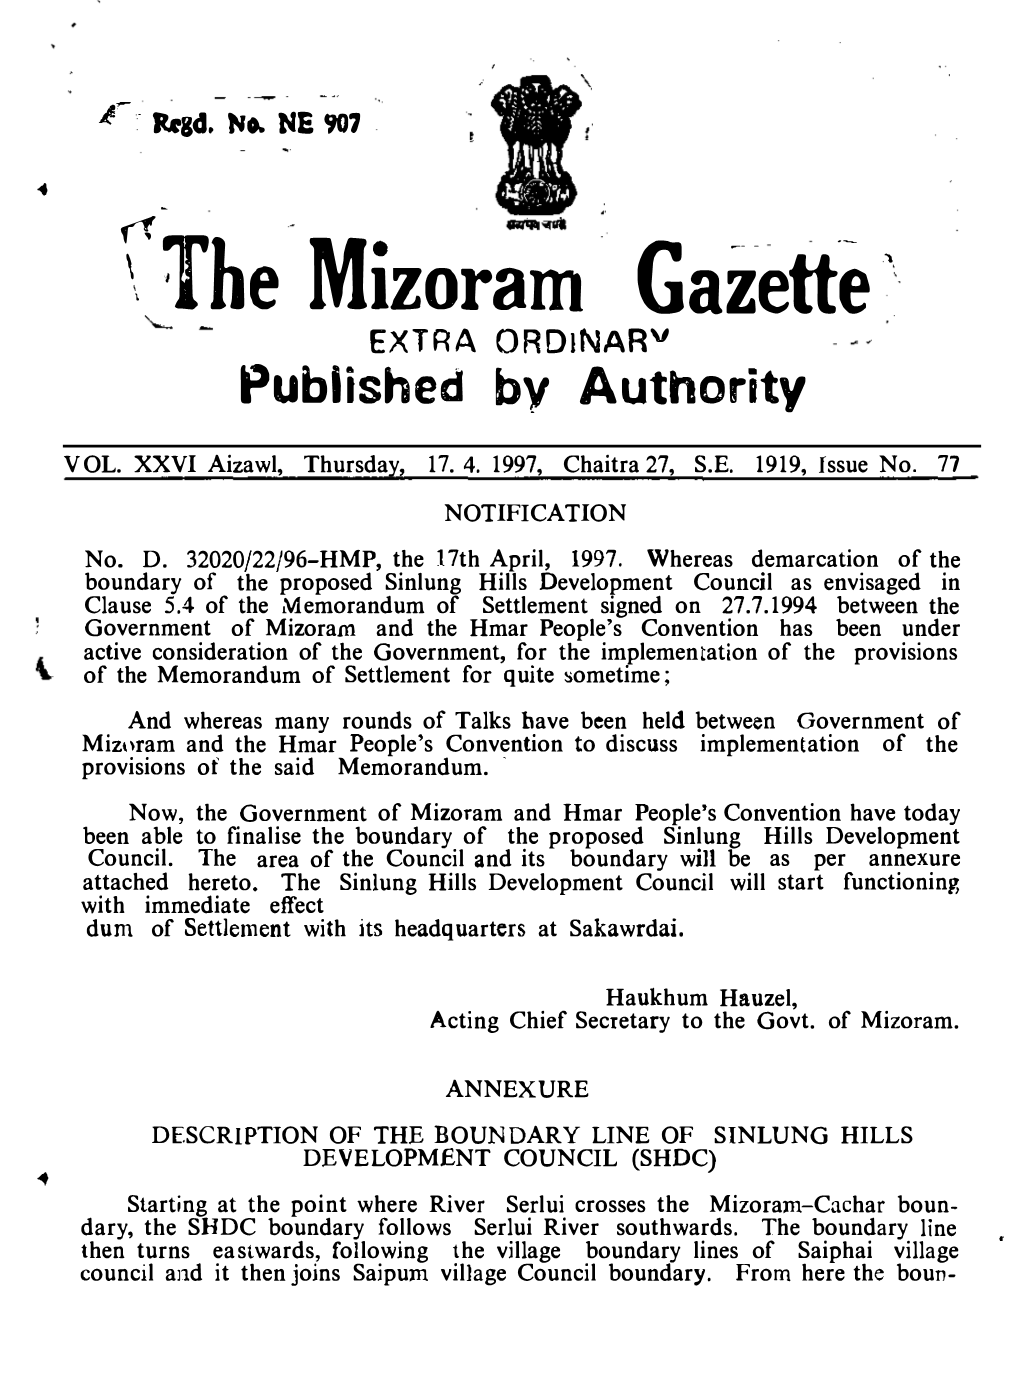 \ the Mizoram Gazette' EXTRA Ordinarv Fublished by Authority